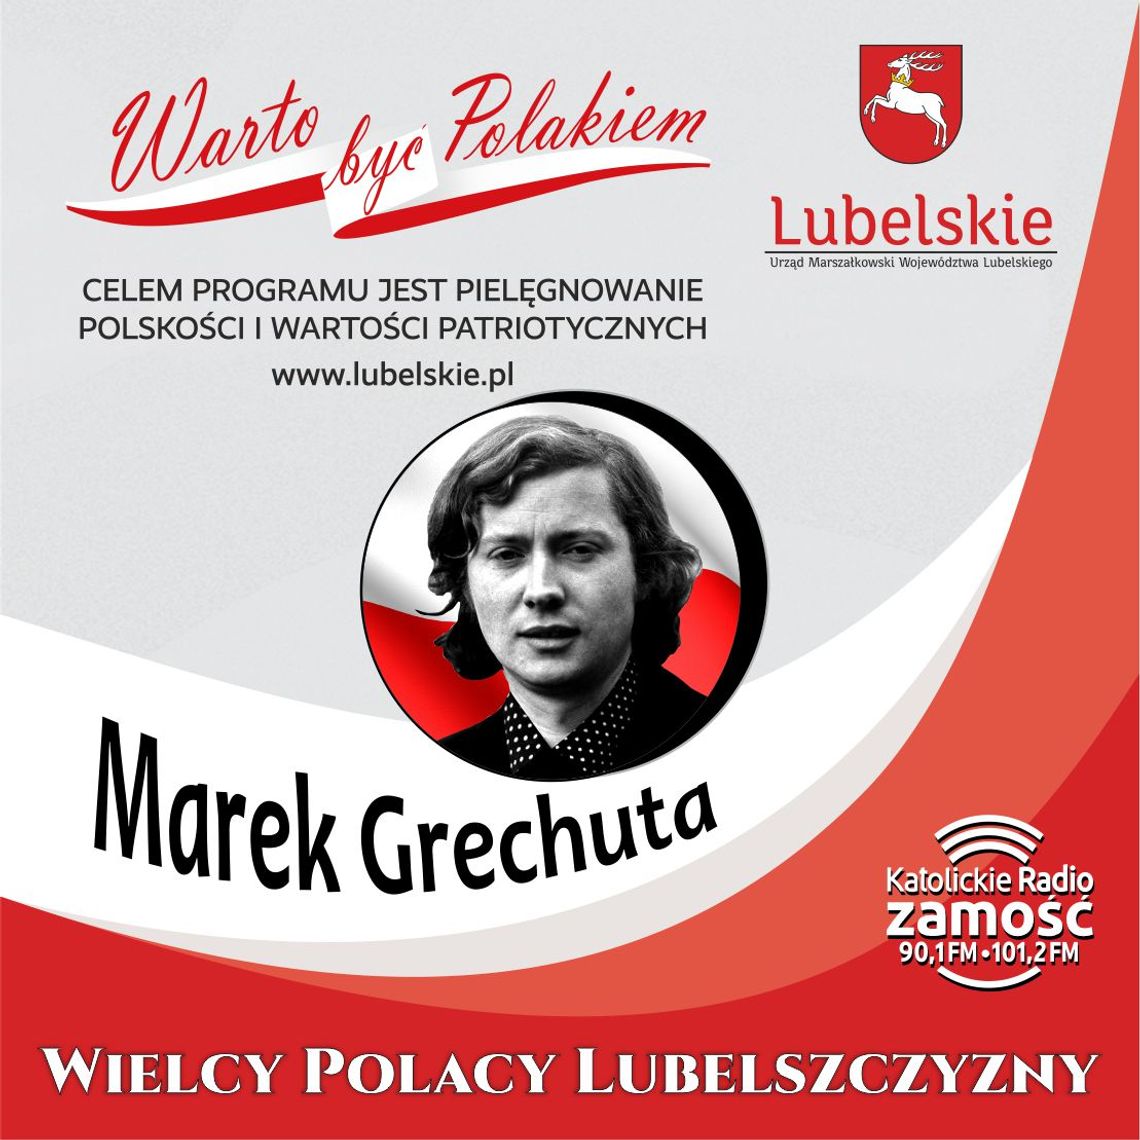 Wielcy Polacy Lubelszczyzny - Marek Grechuta